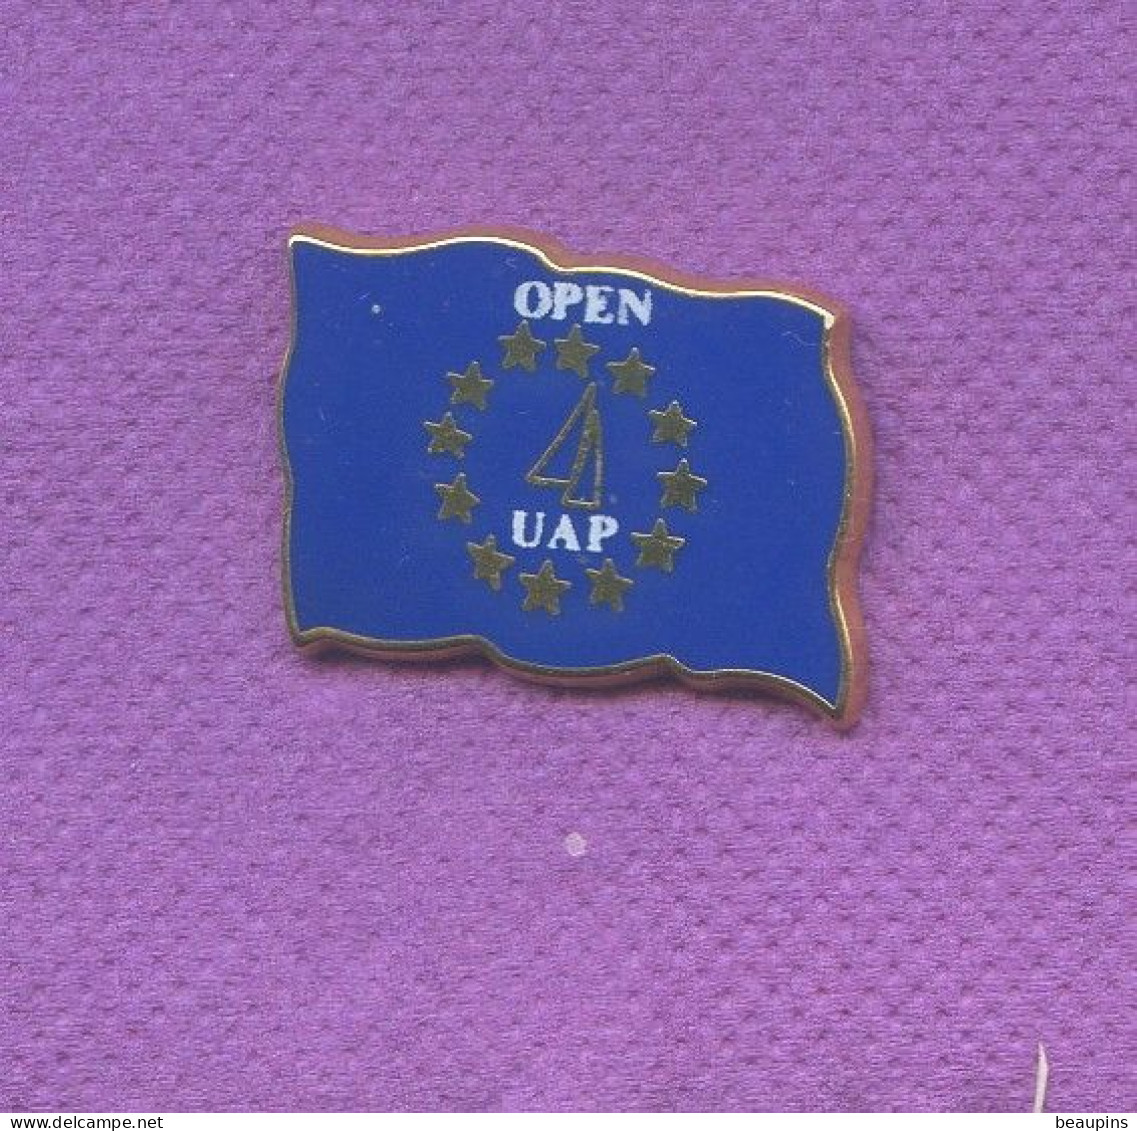 Rare Pins Voile Open Assurance Uap Drapeau Europe Zamac Starpins L399 - Segeln